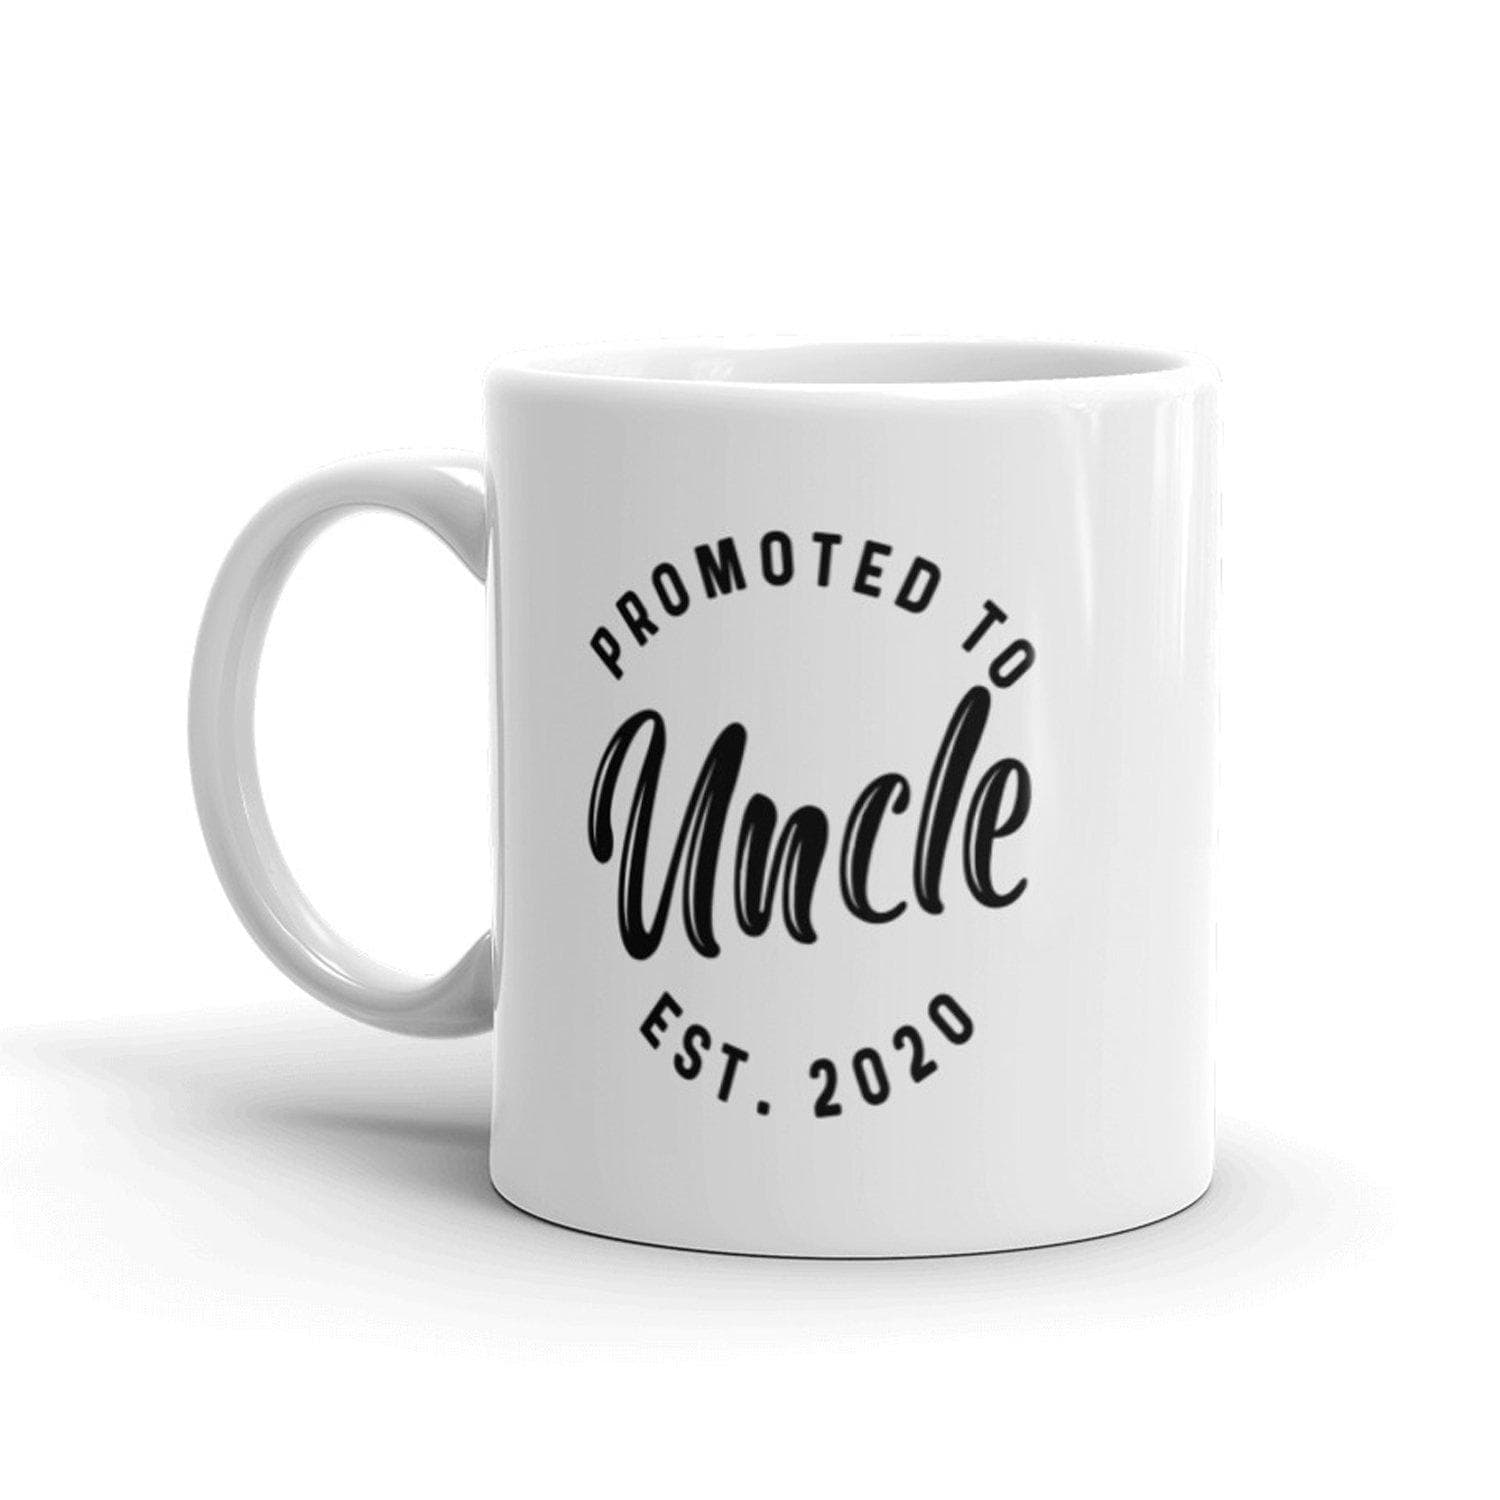 Promoted To Uncle 2020 Mug - Crazy Dog T-Shirts